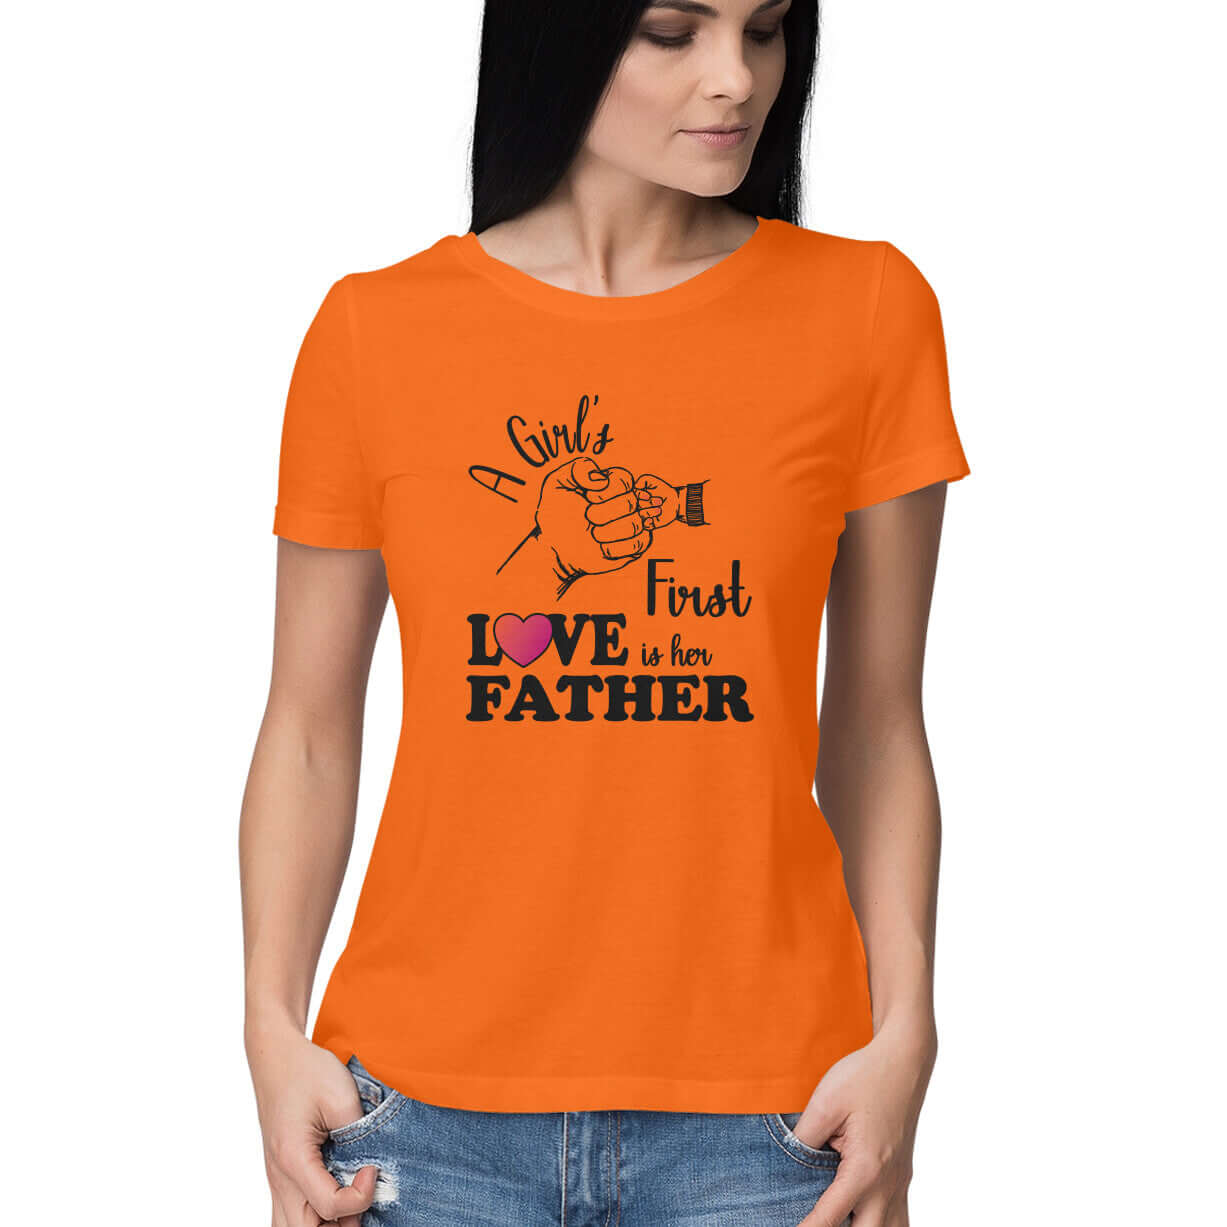 A Girl's First True Love is her Father | Women's T-Shirt - FairyBellsKart